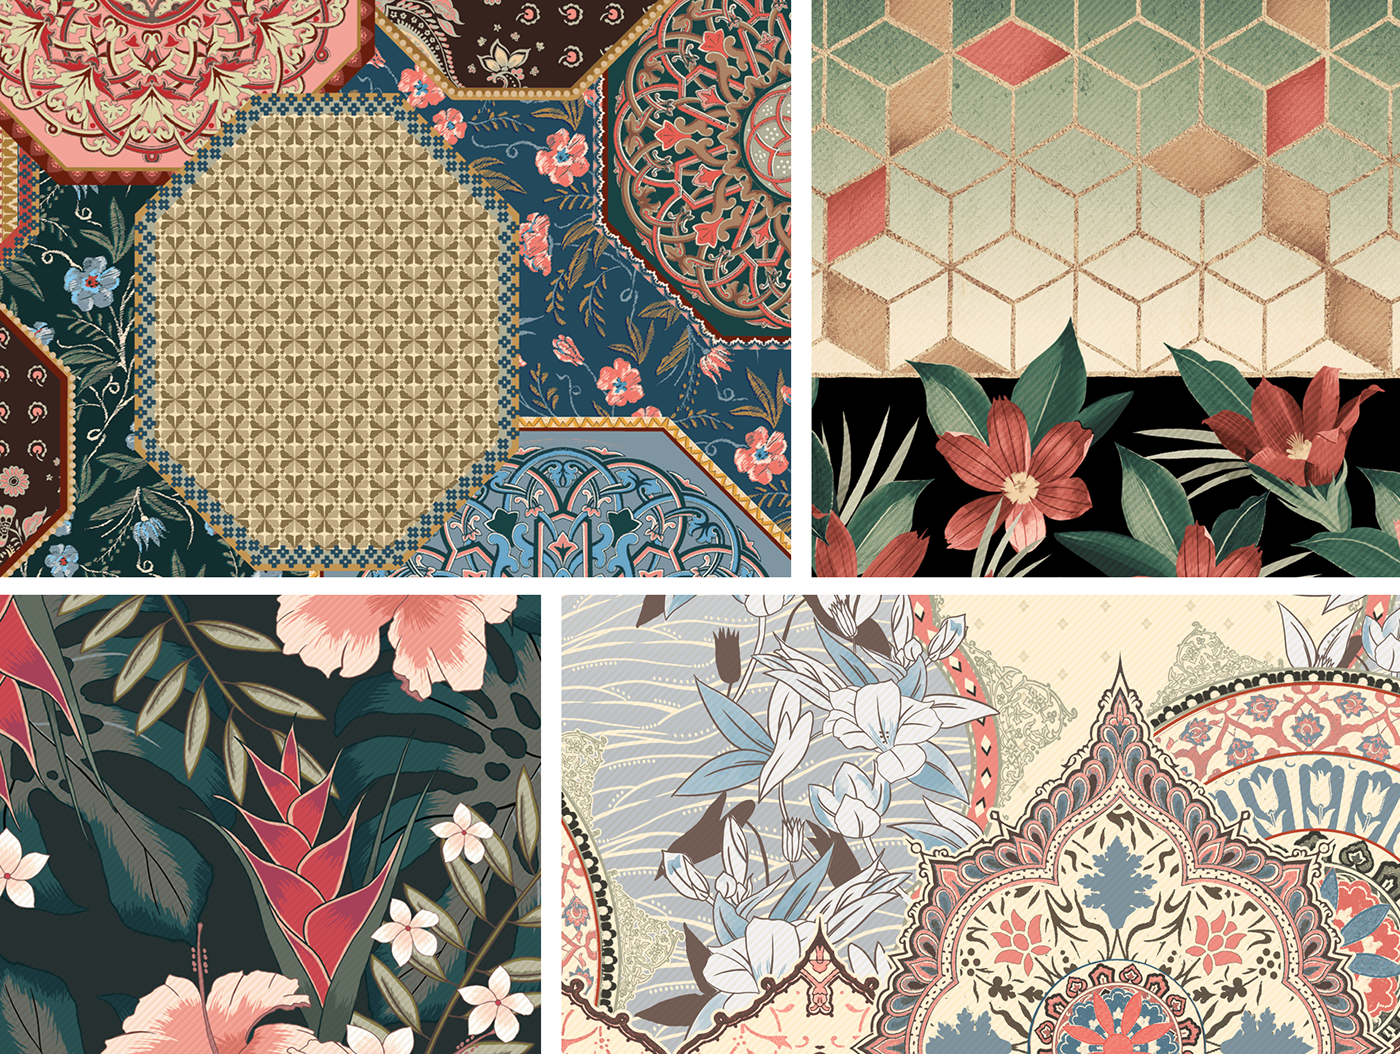 moda design de tecidos pattern padrões graphic design  Estampa arte digital branding  boho bohemian